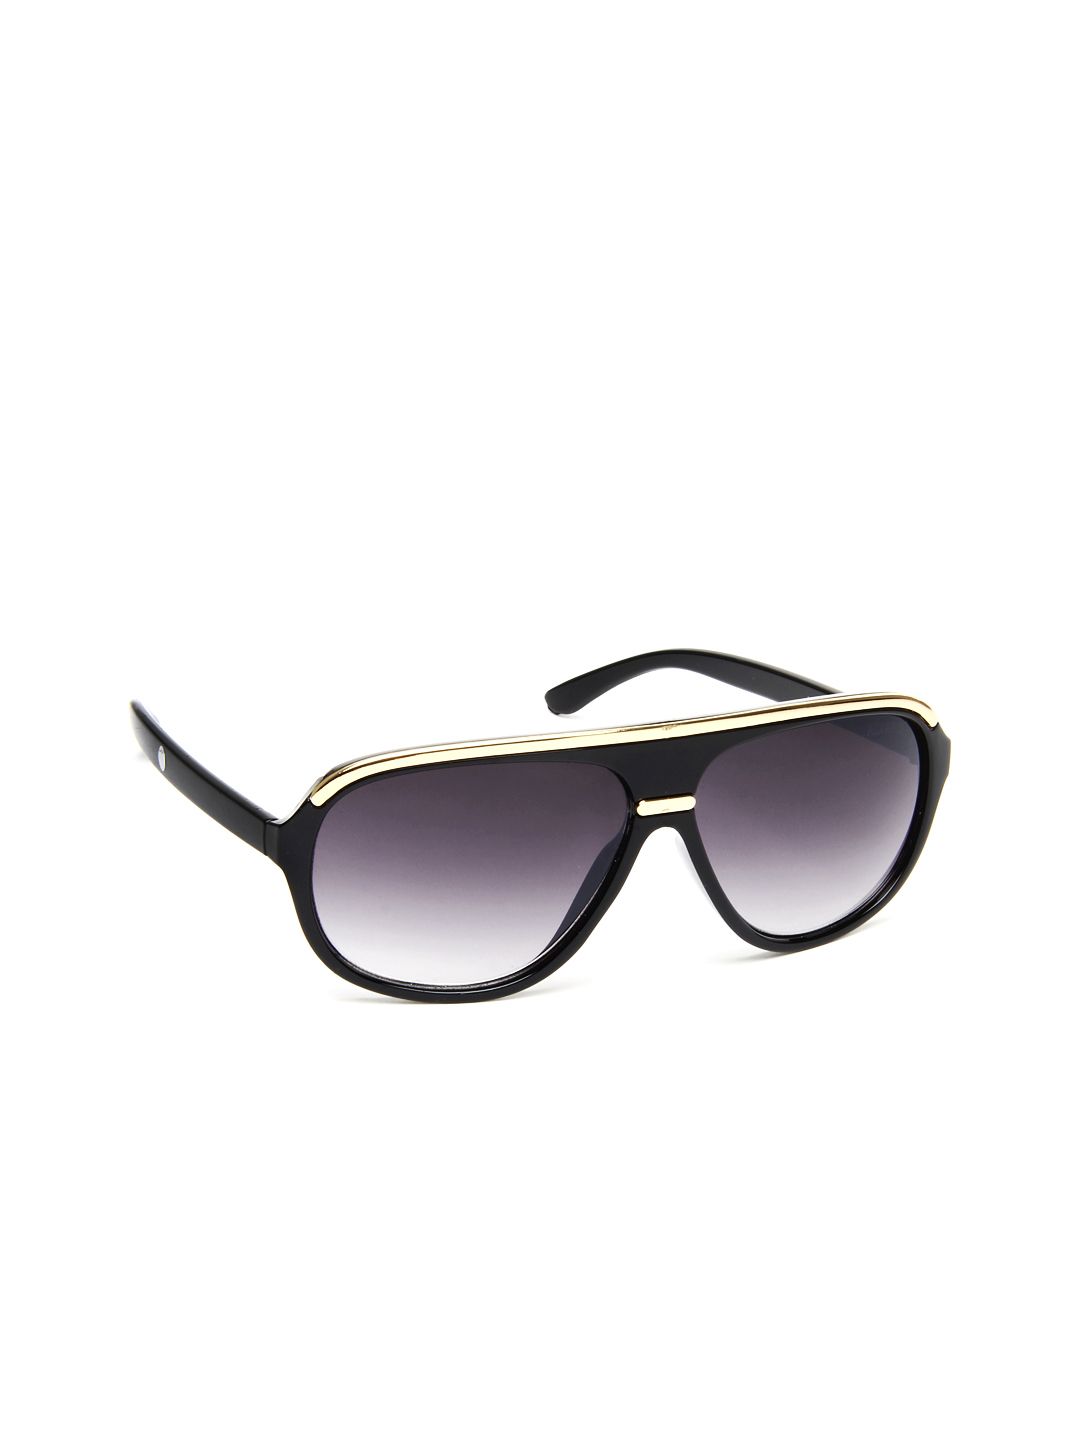 Alvaro Castagnino Women Sunglasses ASG146 Price in India